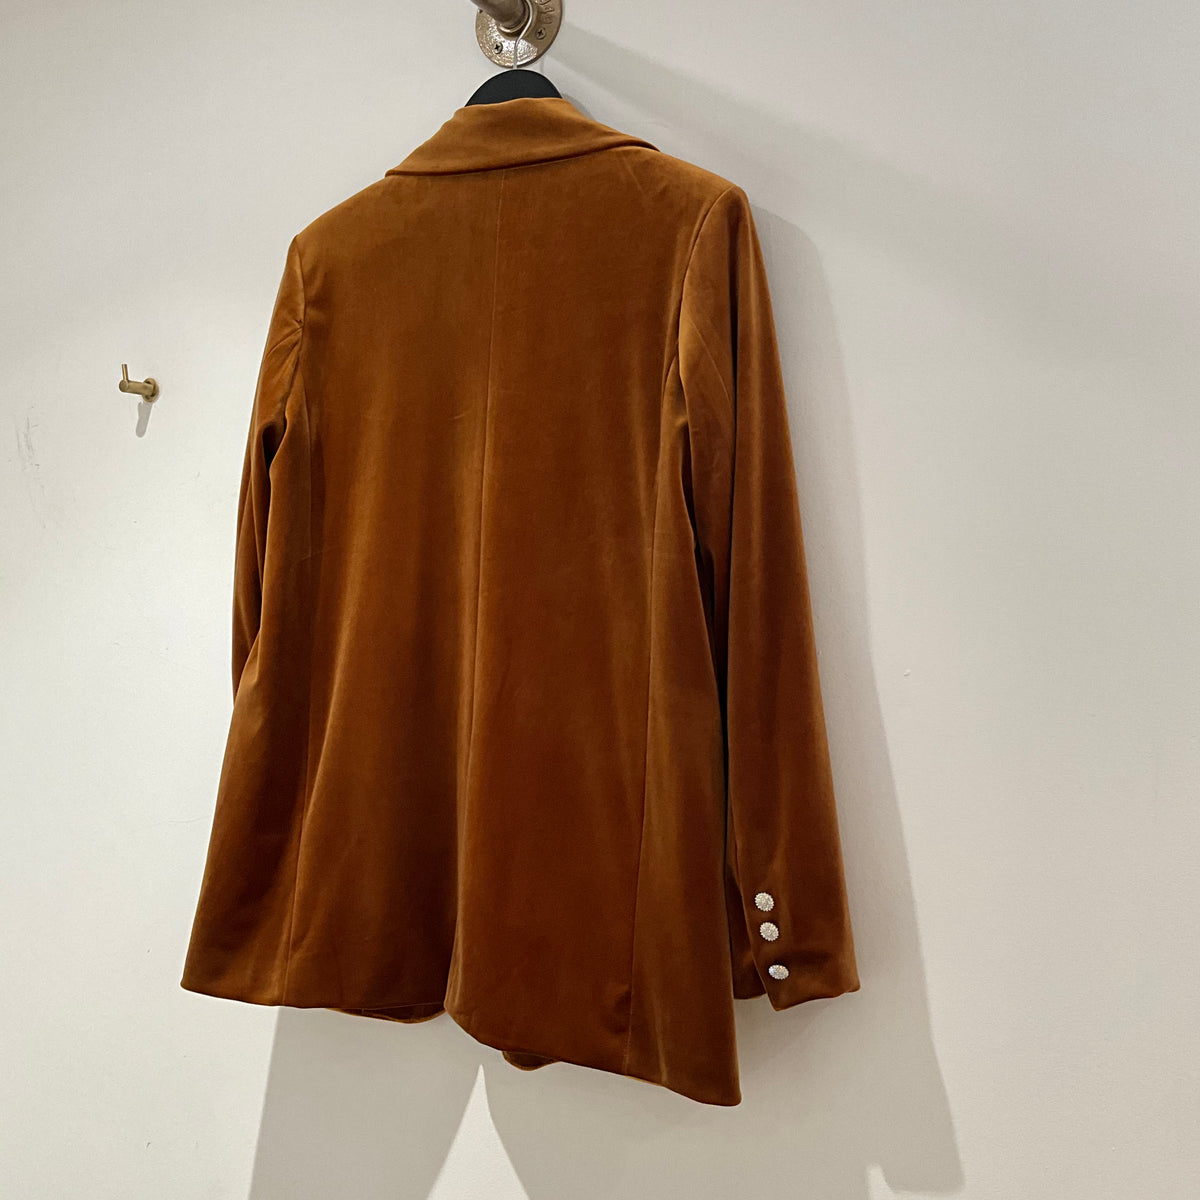 Attentif velvet jacket Copper 36 Medium